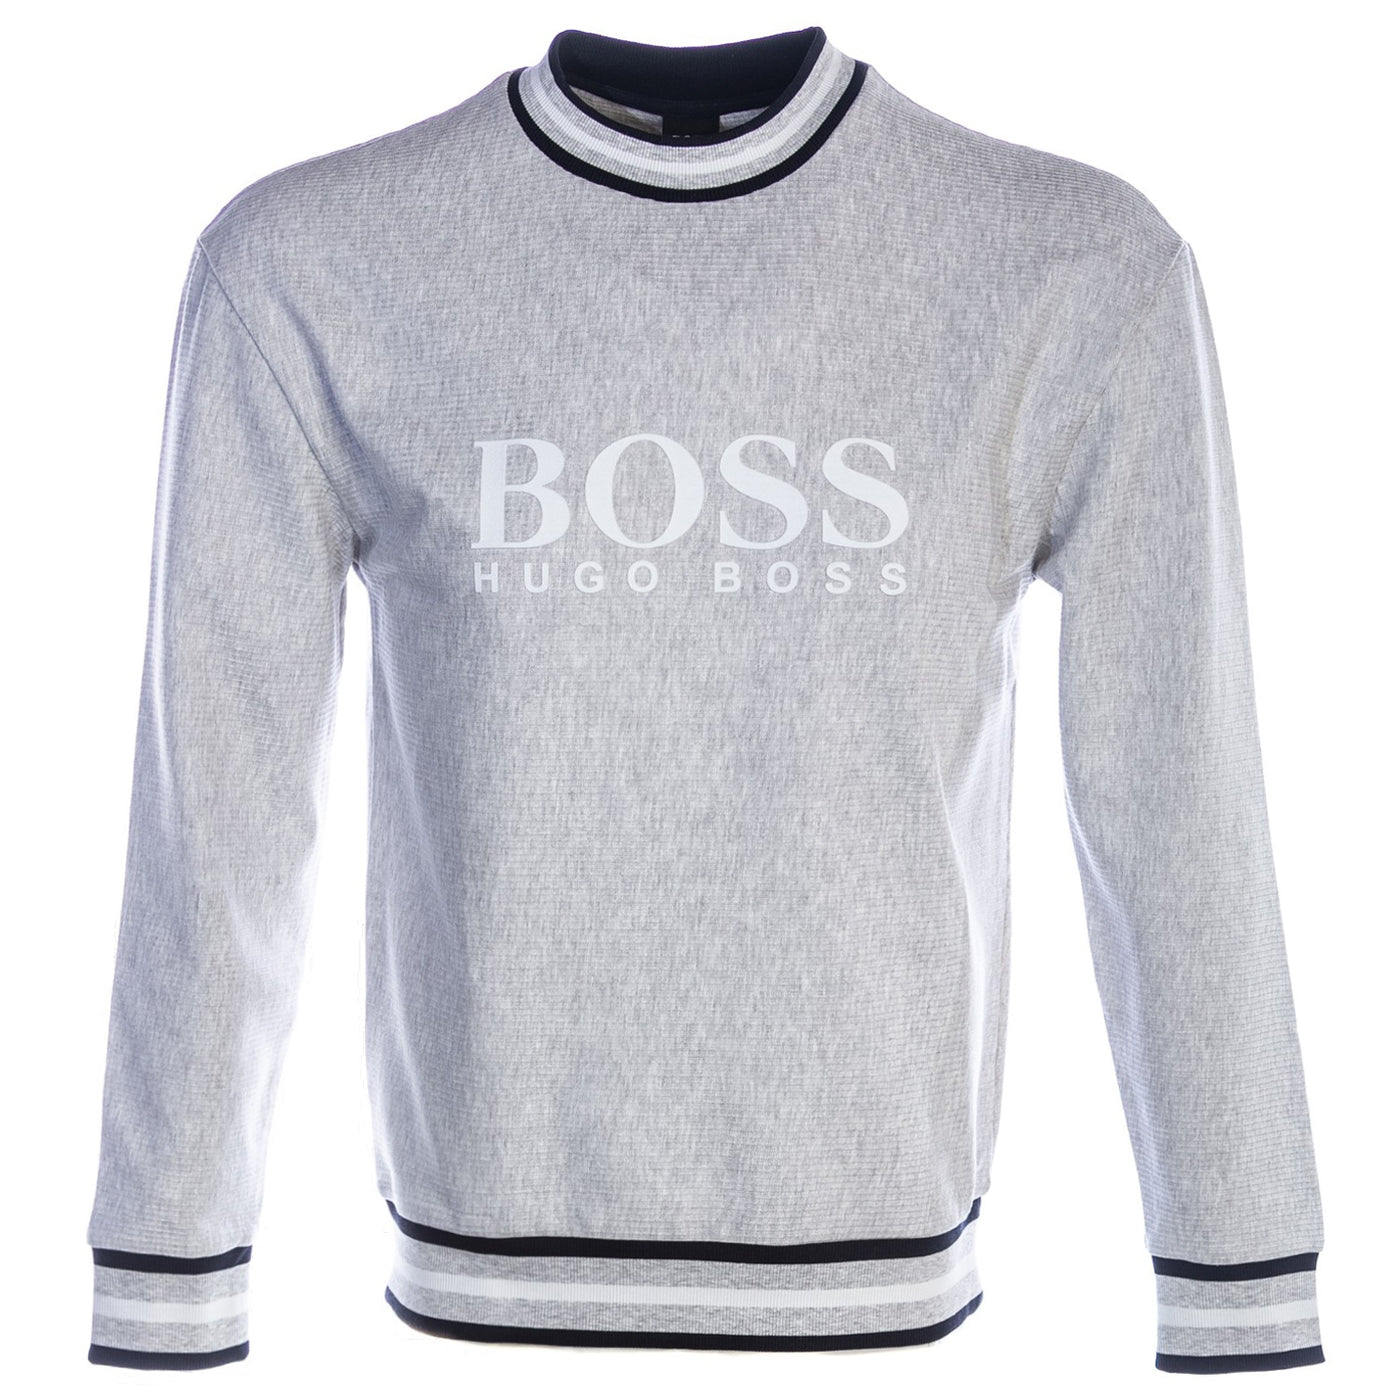 BOSS Heritage Sweatshirt Sweat Top in Grey